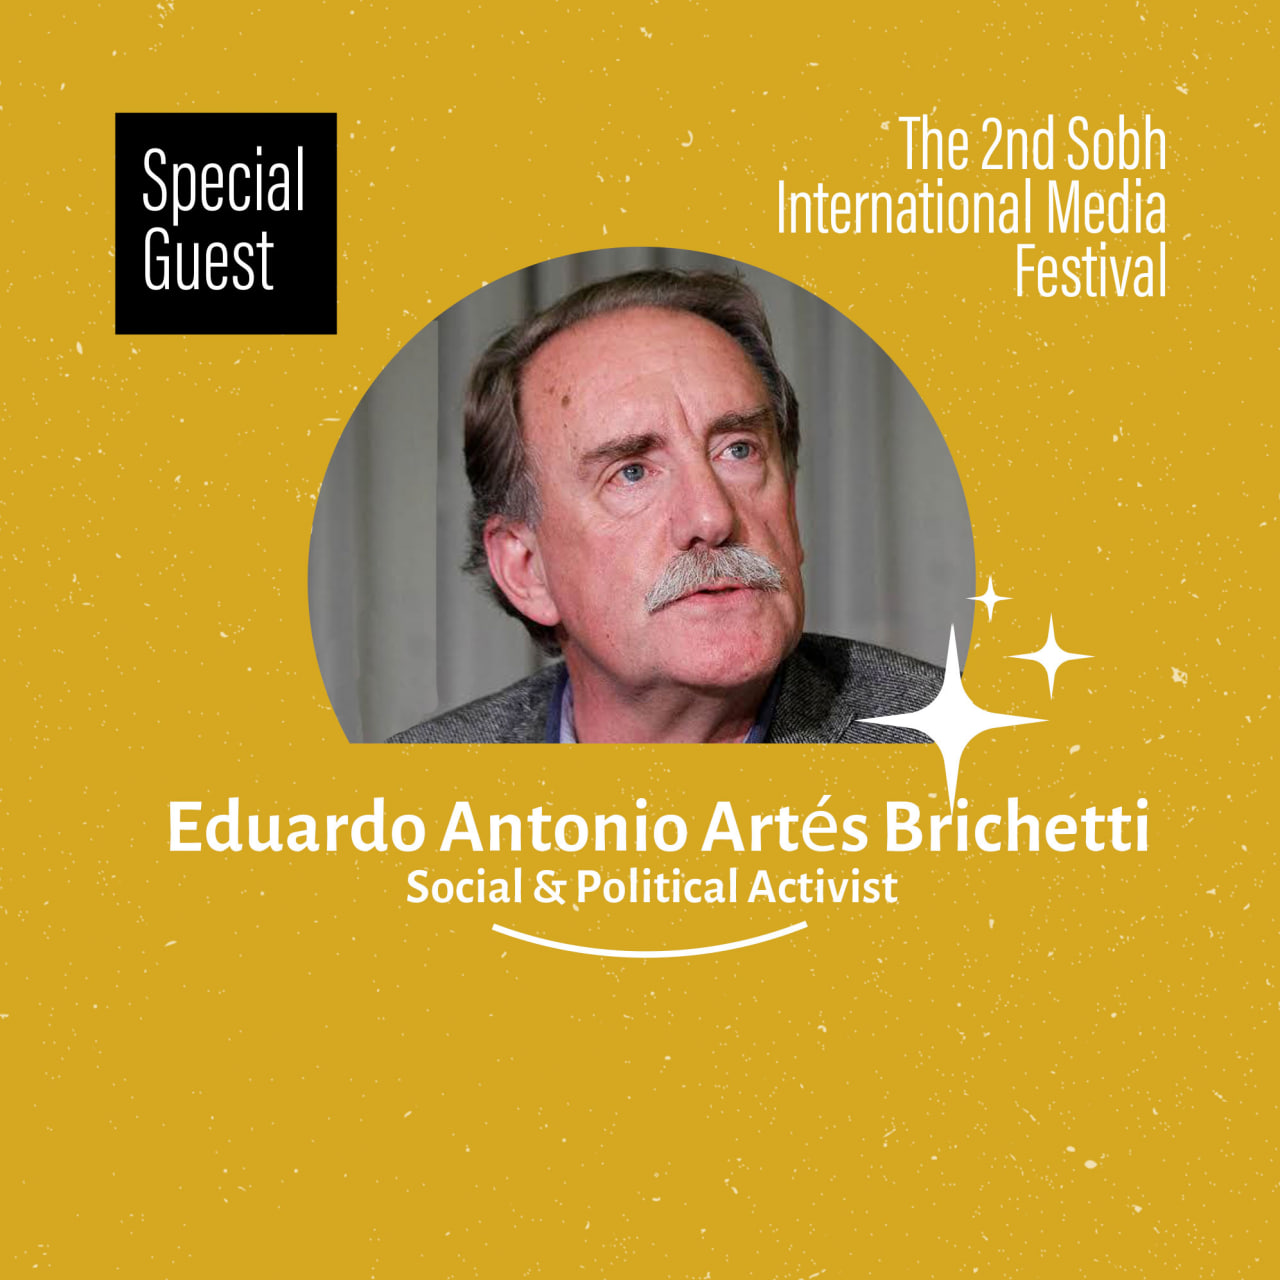 Eduardo Antonio Artés Brichetti